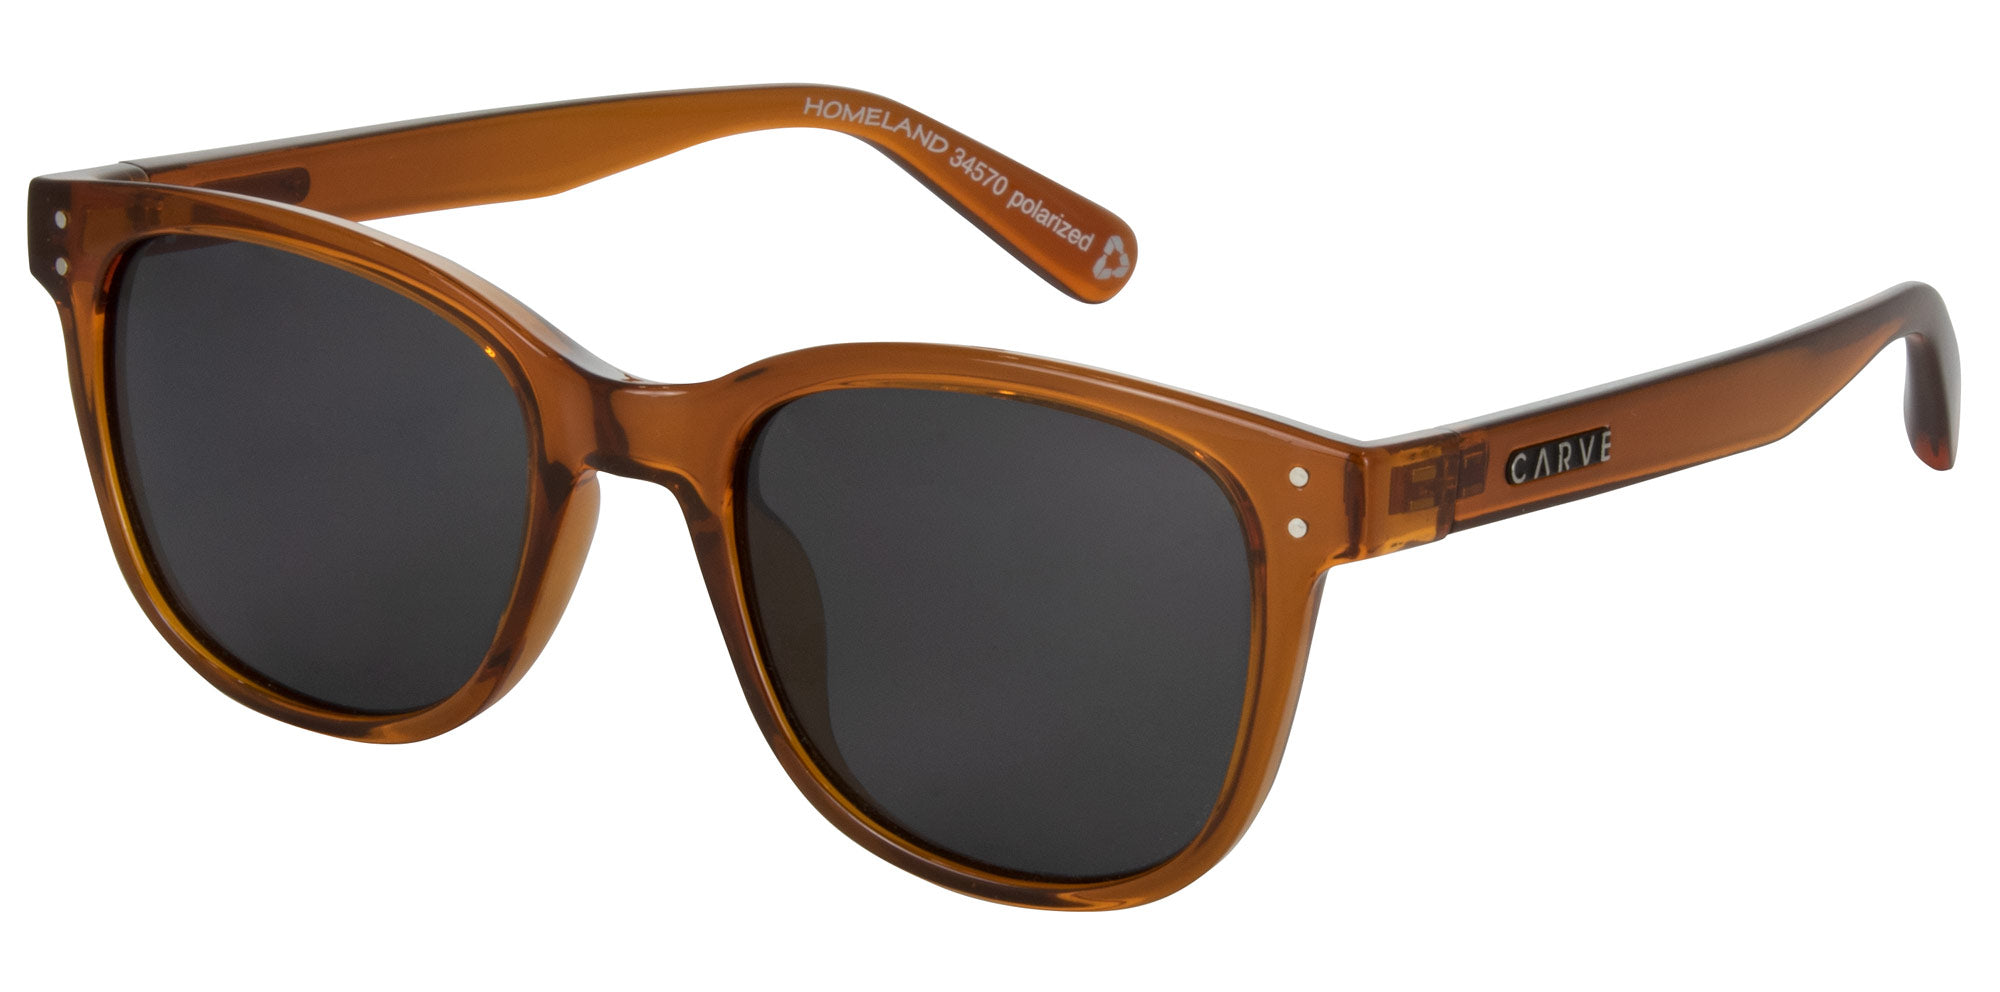 Homeland - Polarized Matte Honey Frame Sunglasses